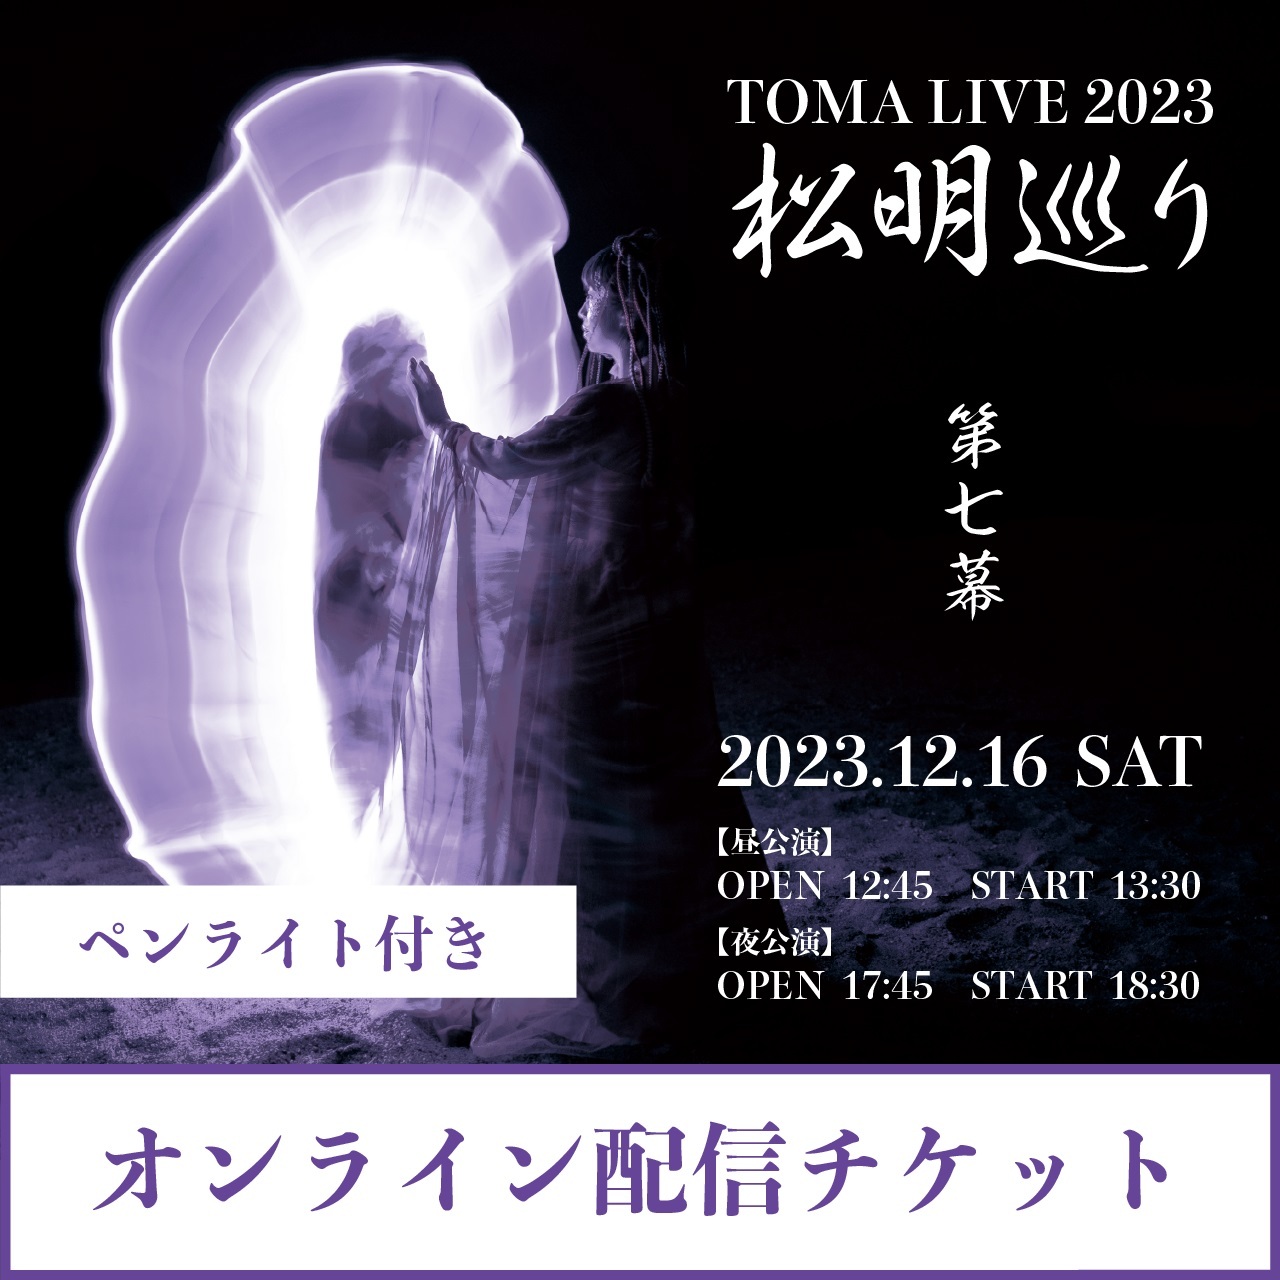 【ペンライト2本付き☆オンライン配信チケット】TOMA LIVE 2023 『松明巡り』 第七幕